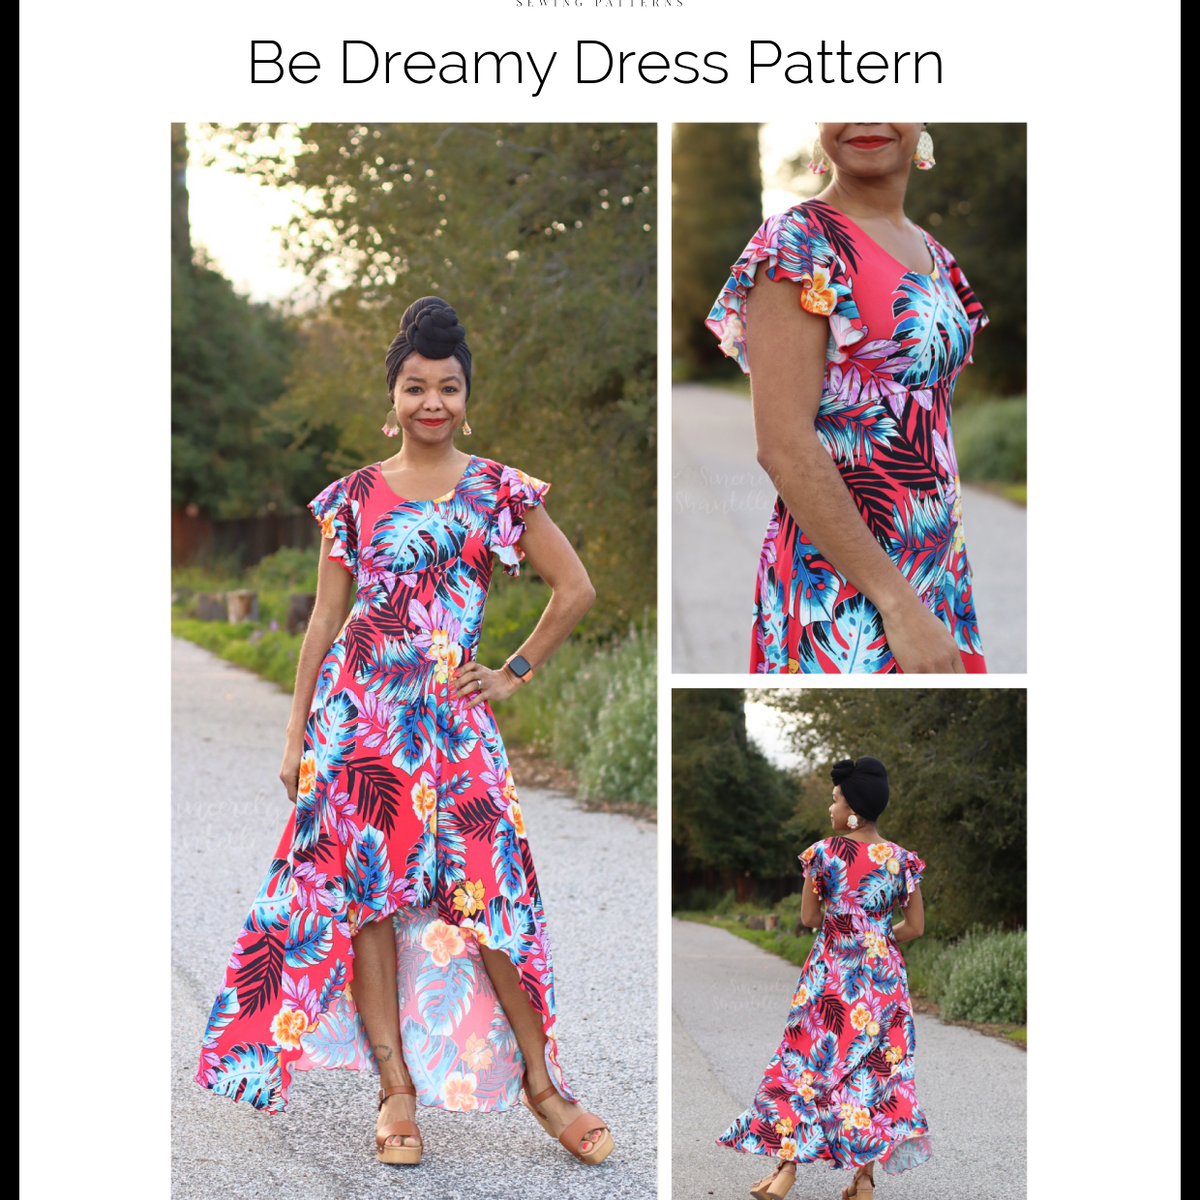 dress sewing patterns